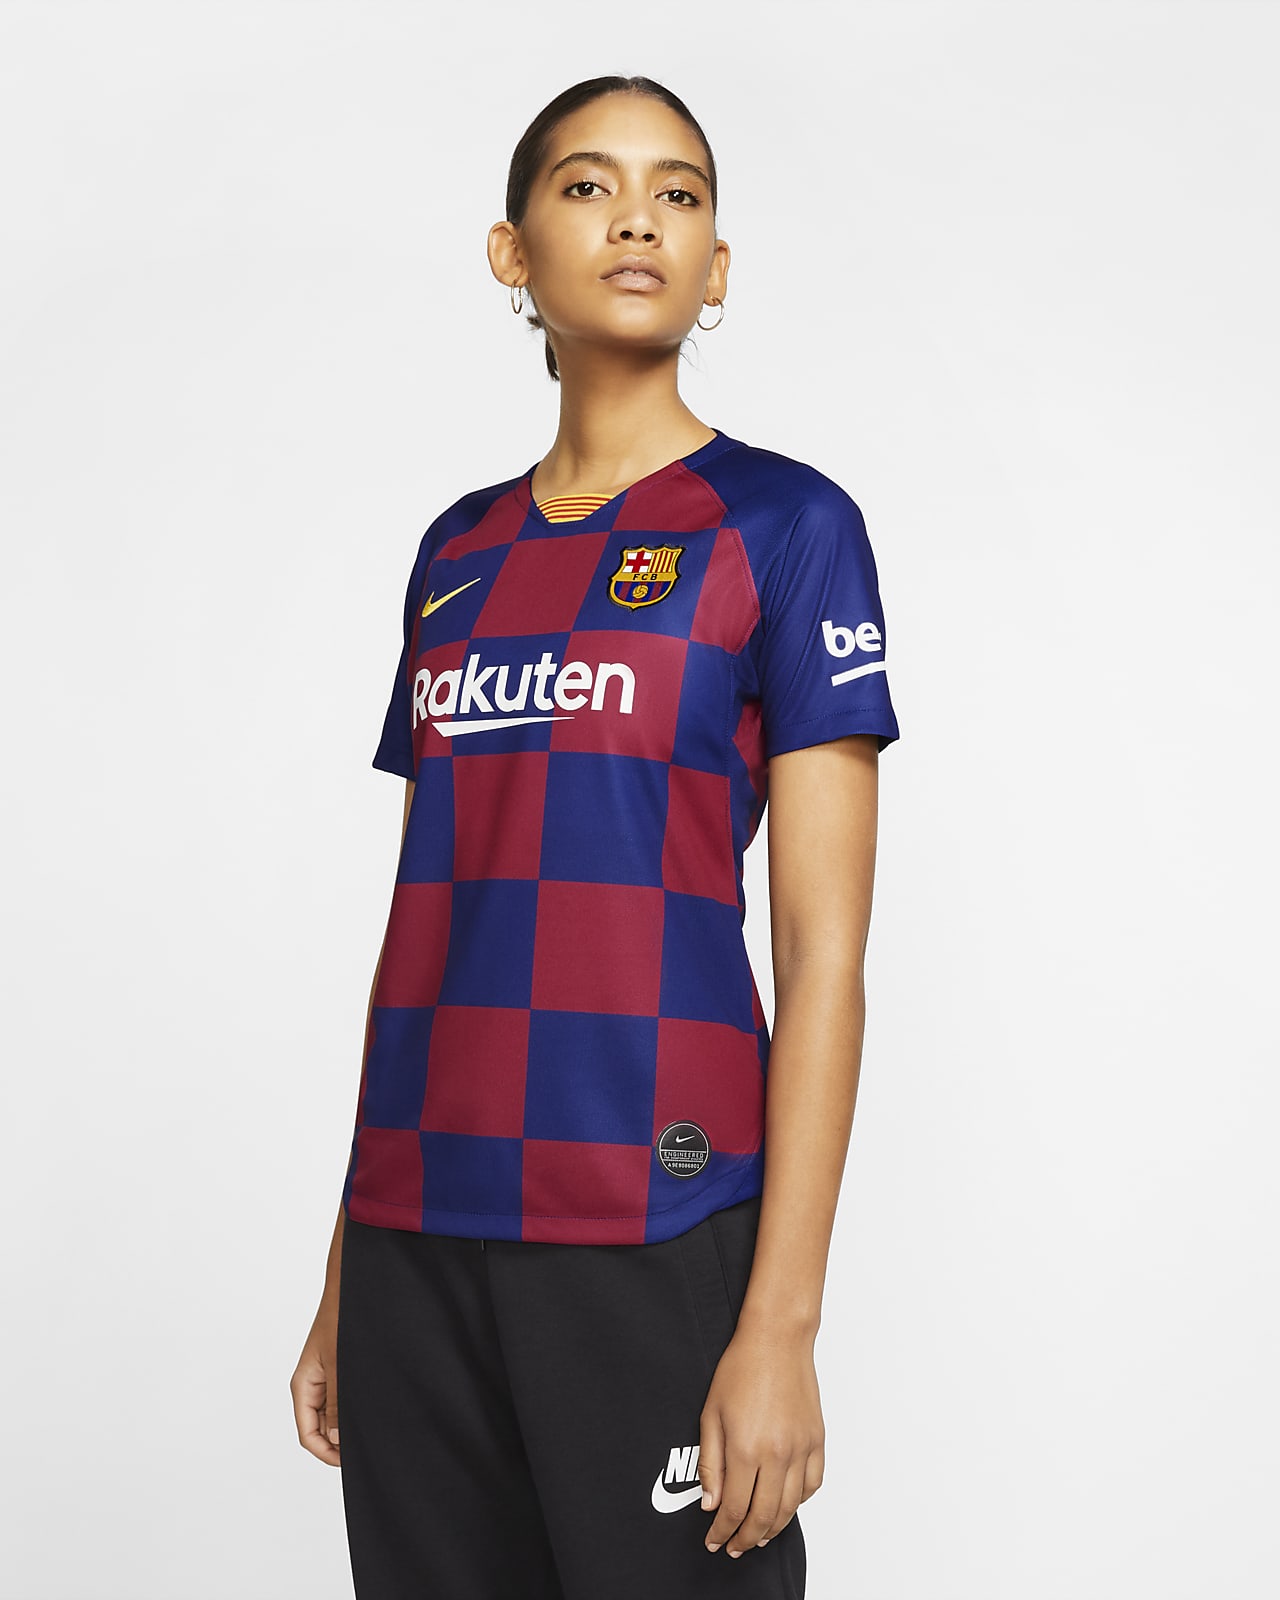 2019 women's soccer jersey